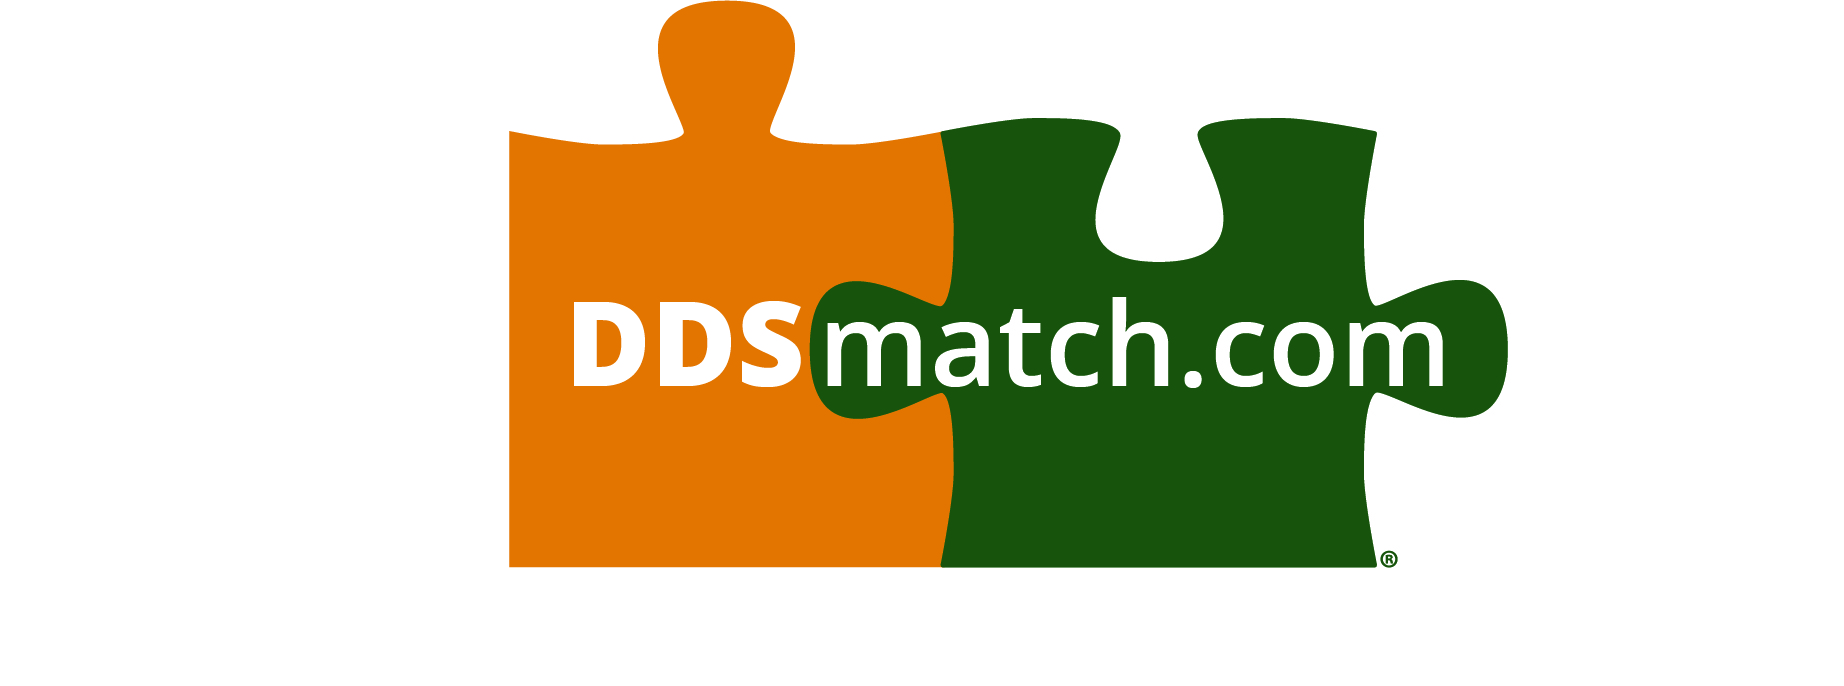 ddsmatch.com - Neal McFadden Logo